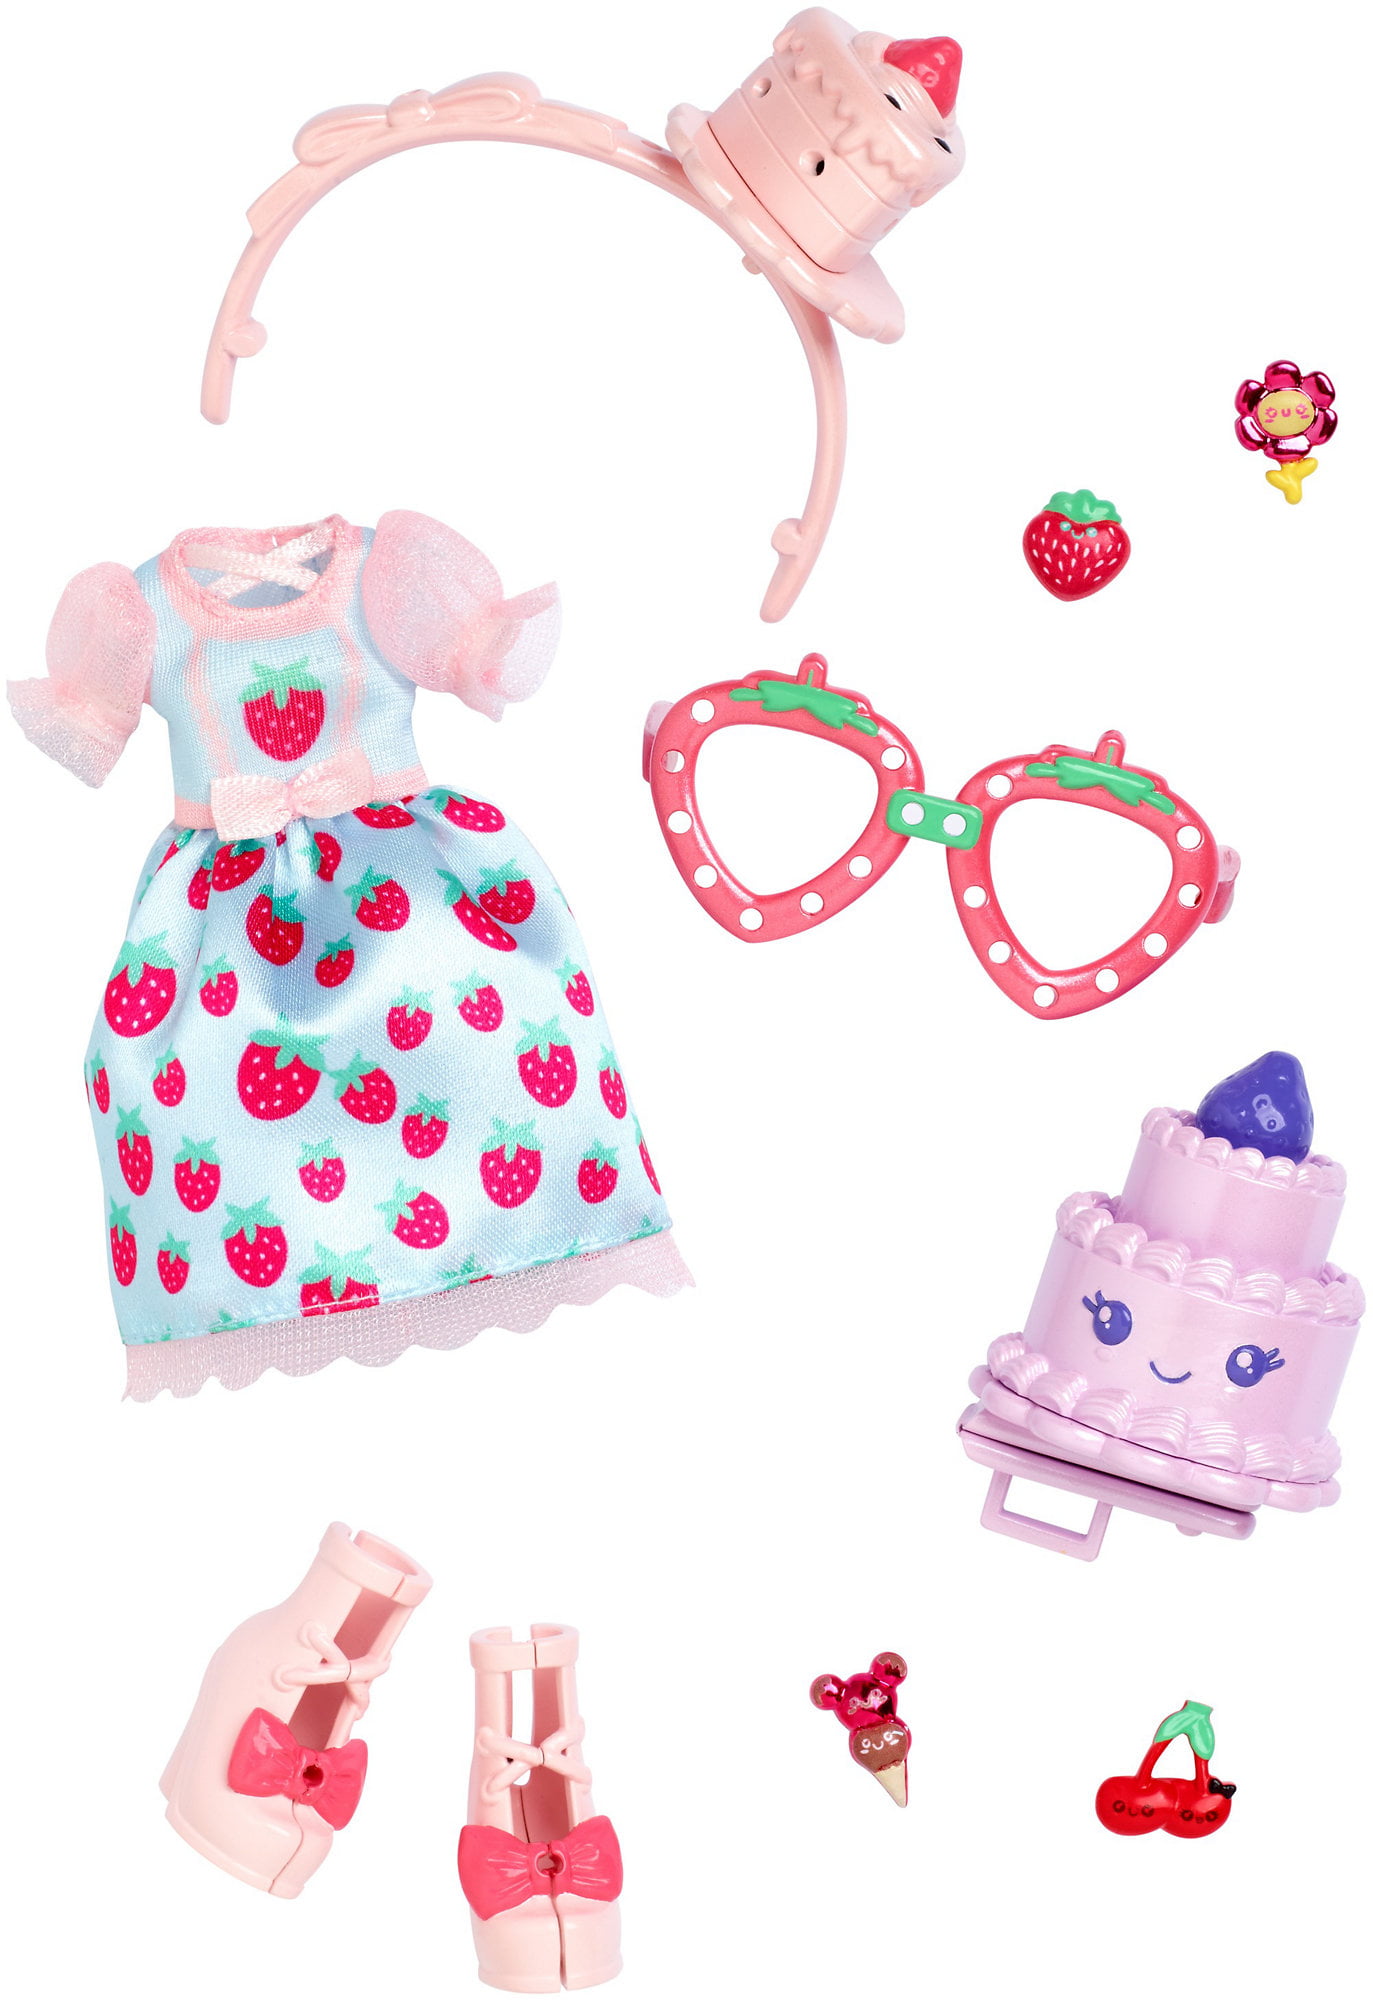 KUU KUU HARAJUKU Super Strawberry Fashion Pack By Mattel for 10" Doll New 